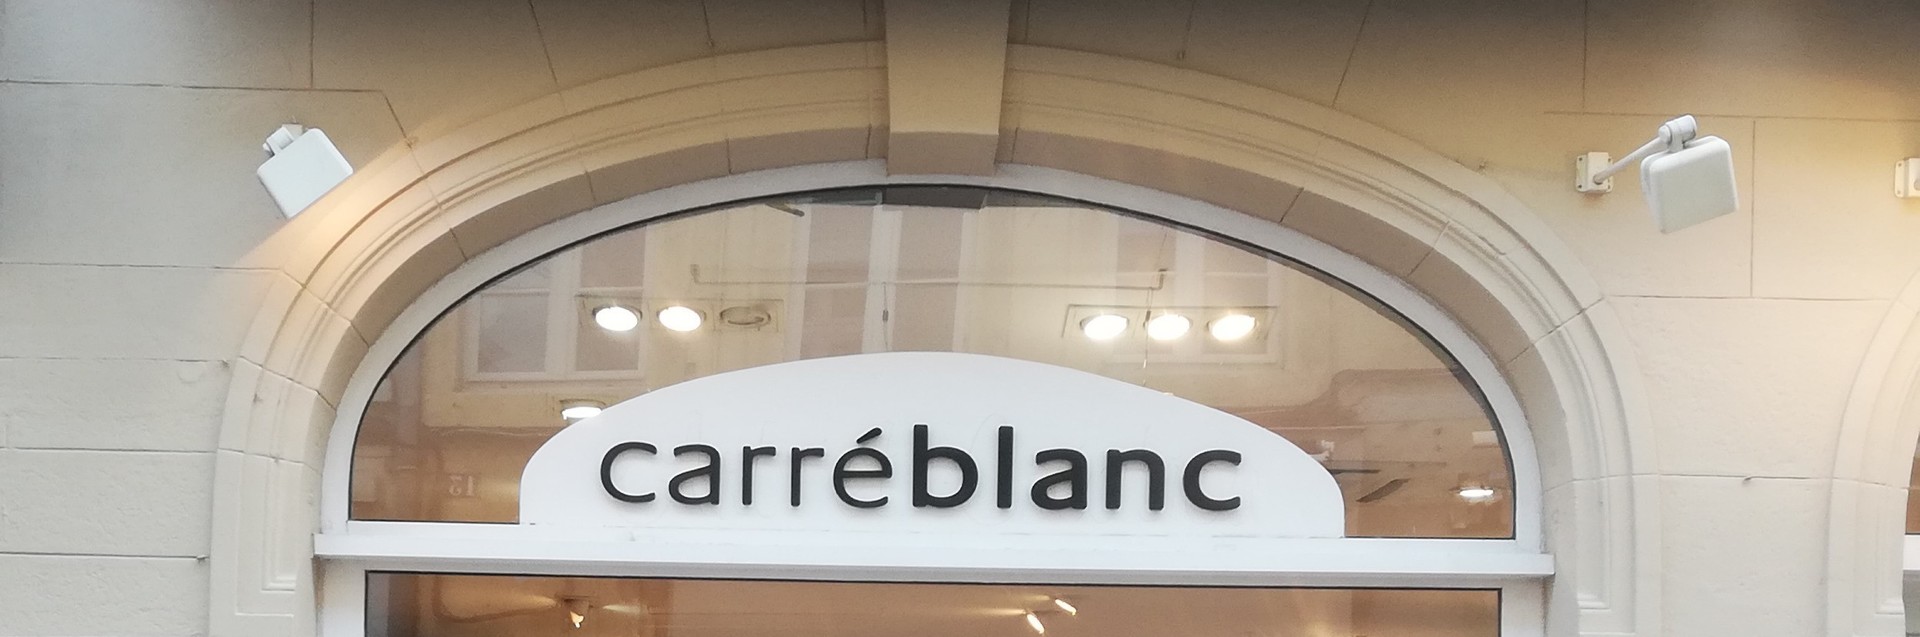 Boutique Carr blanc - Clique et rapplique Chalon-sur-Sane